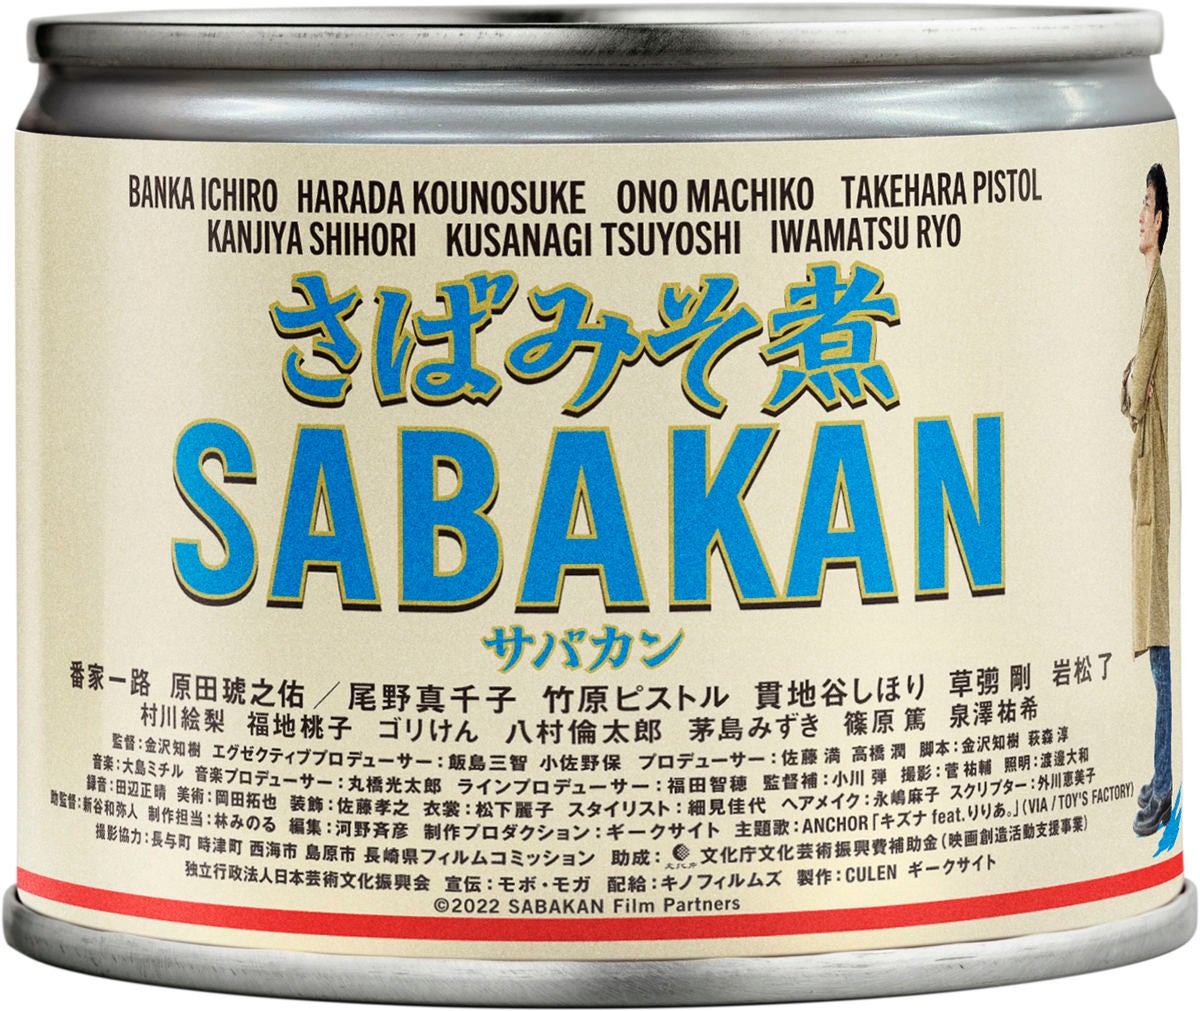 映画「サバカン SABAKAN」×スシロー、映画に登場する「サバカンずし